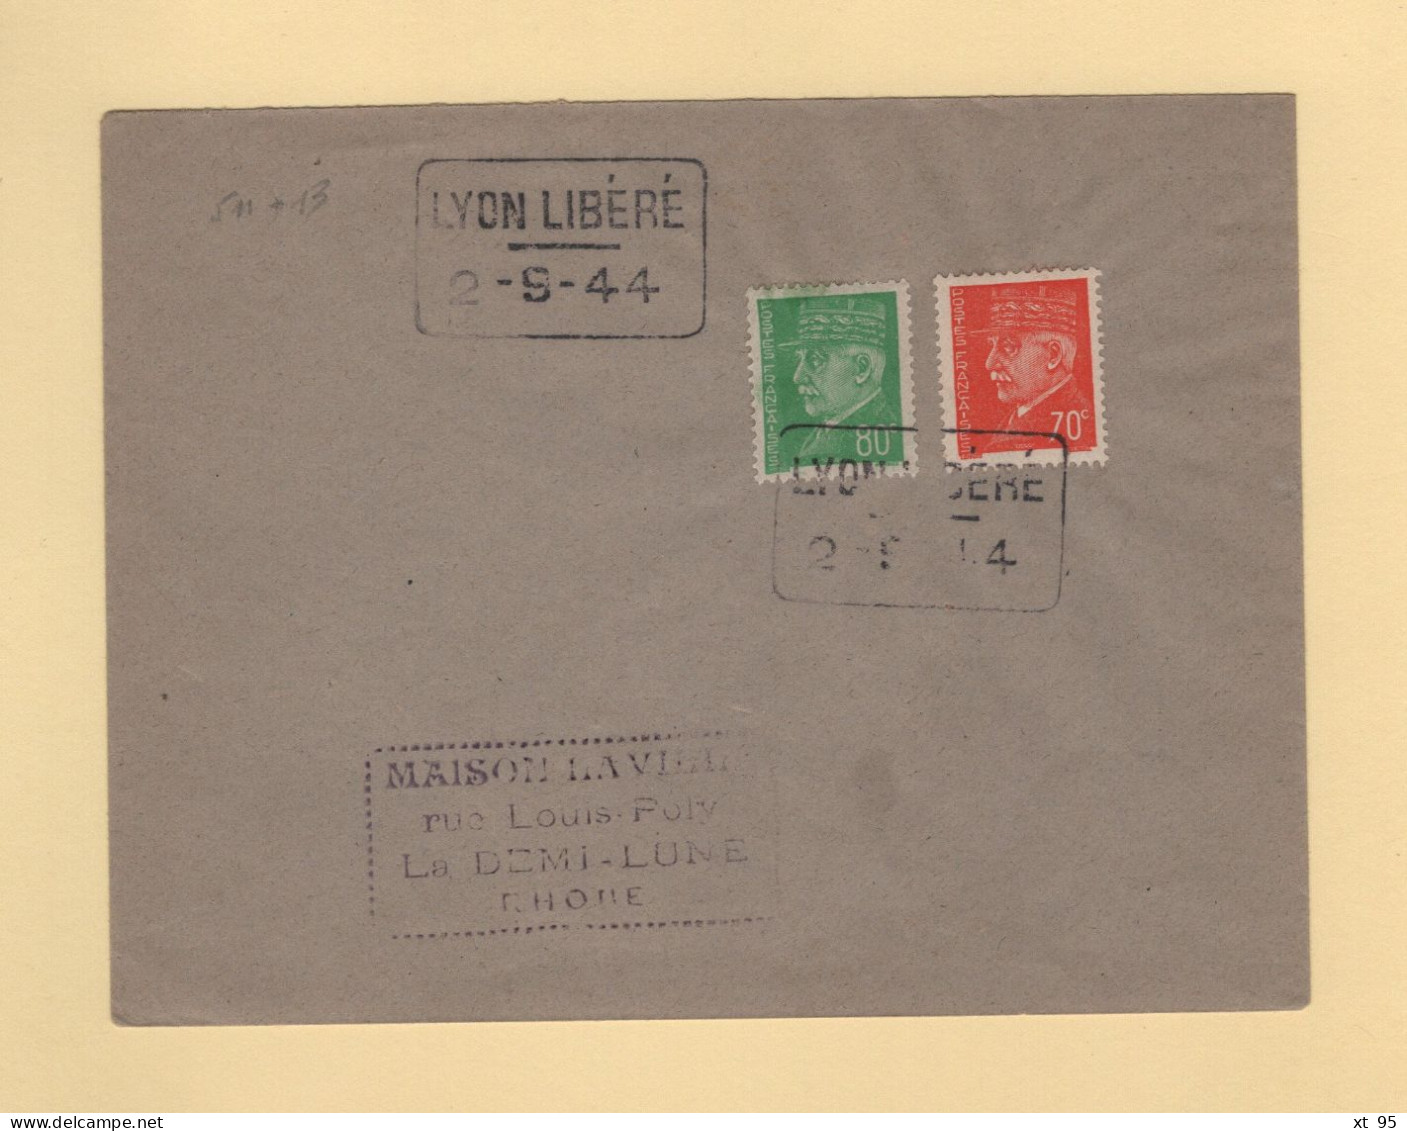 Liberation - Lyon Libere - 2-9-44 - Type Petain - Liberation